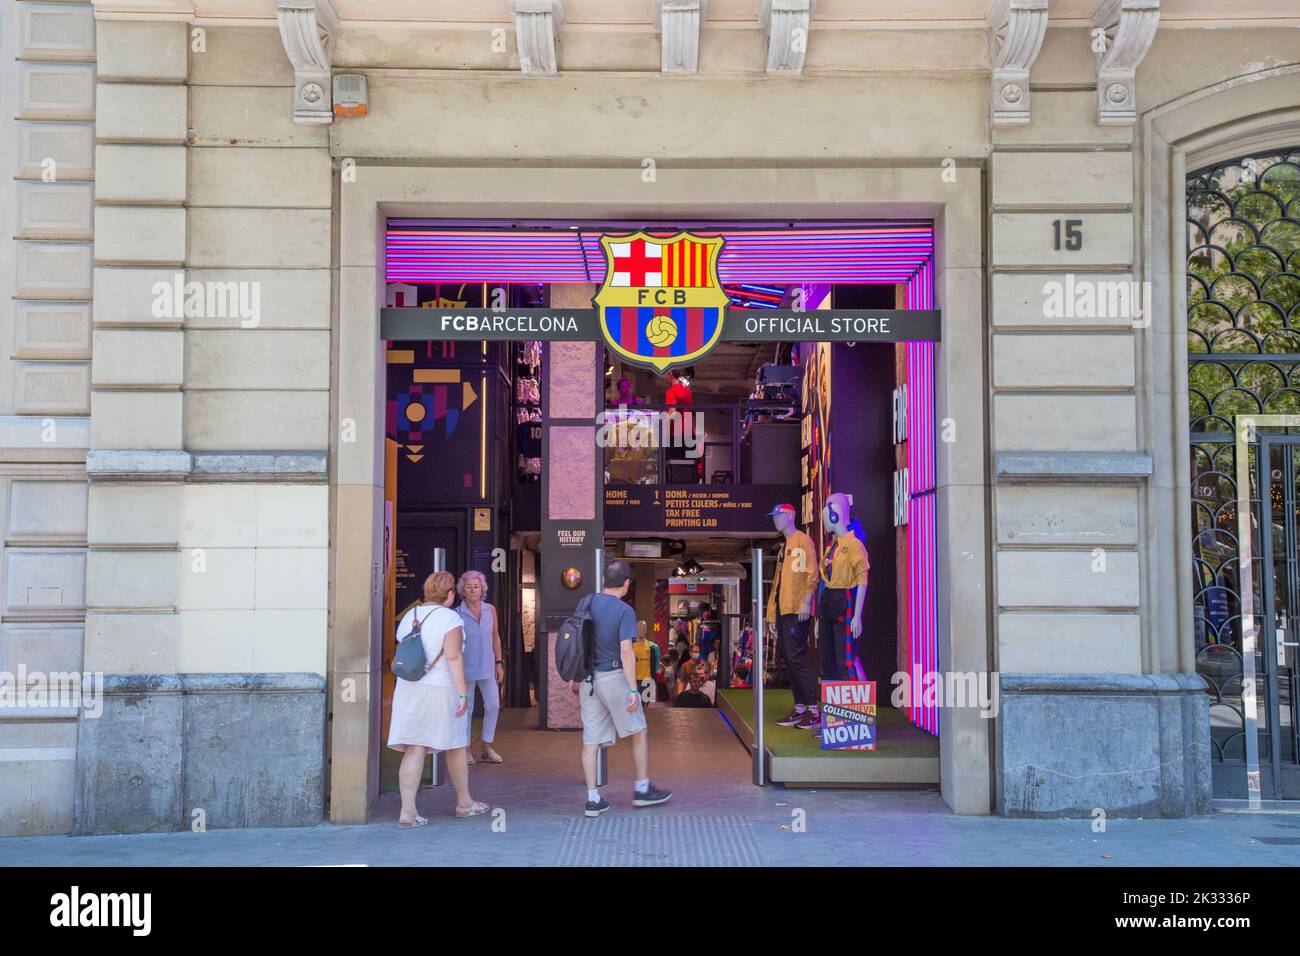 Tienda de fútbol club barcelona fotografías e imágenes de alta resolución -  Alamy